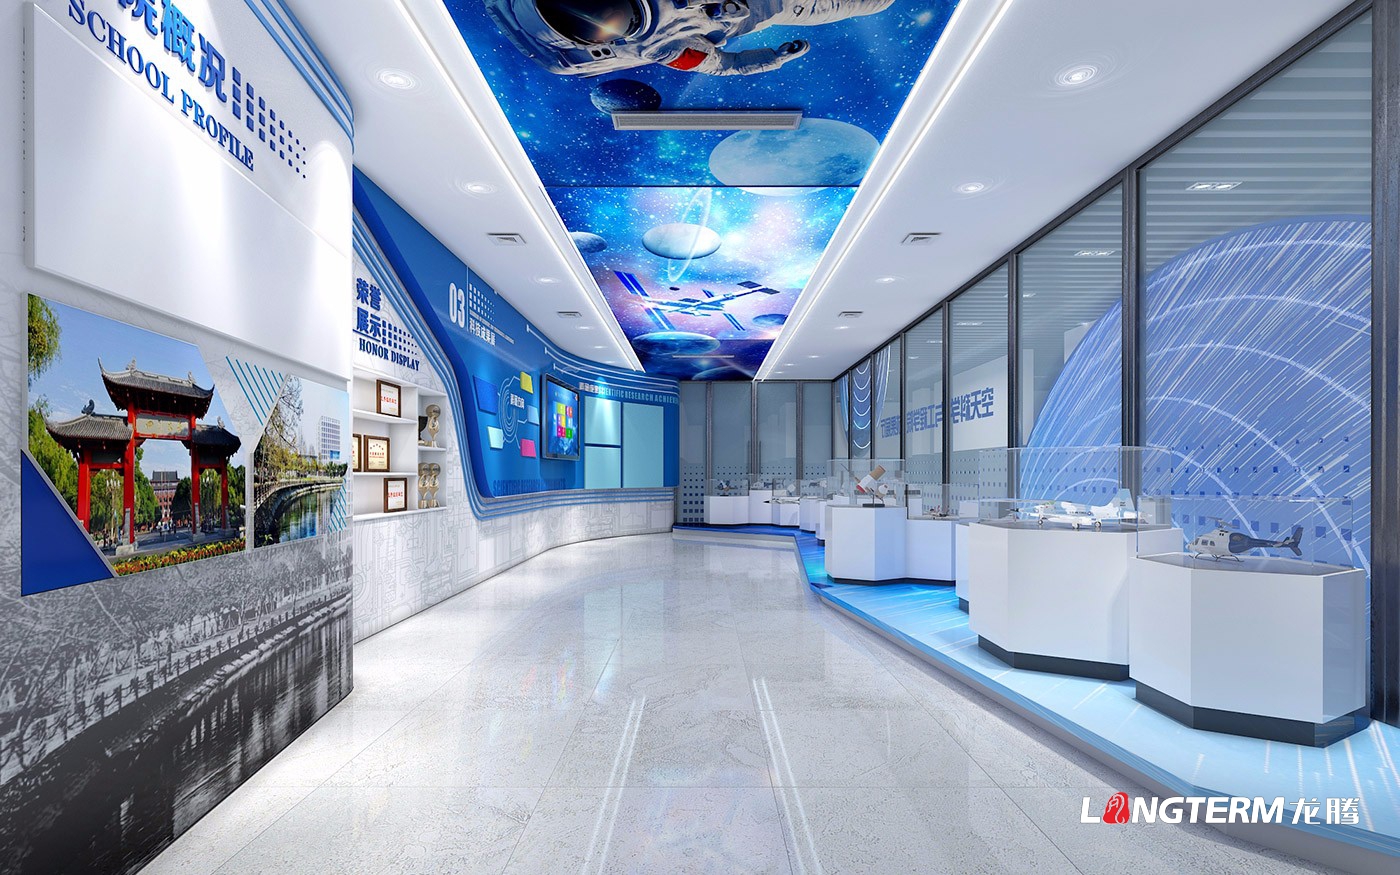 四川大學空天科學與工程學院成果展示廳設計制作施工一體化_航天科技展館策劃設計